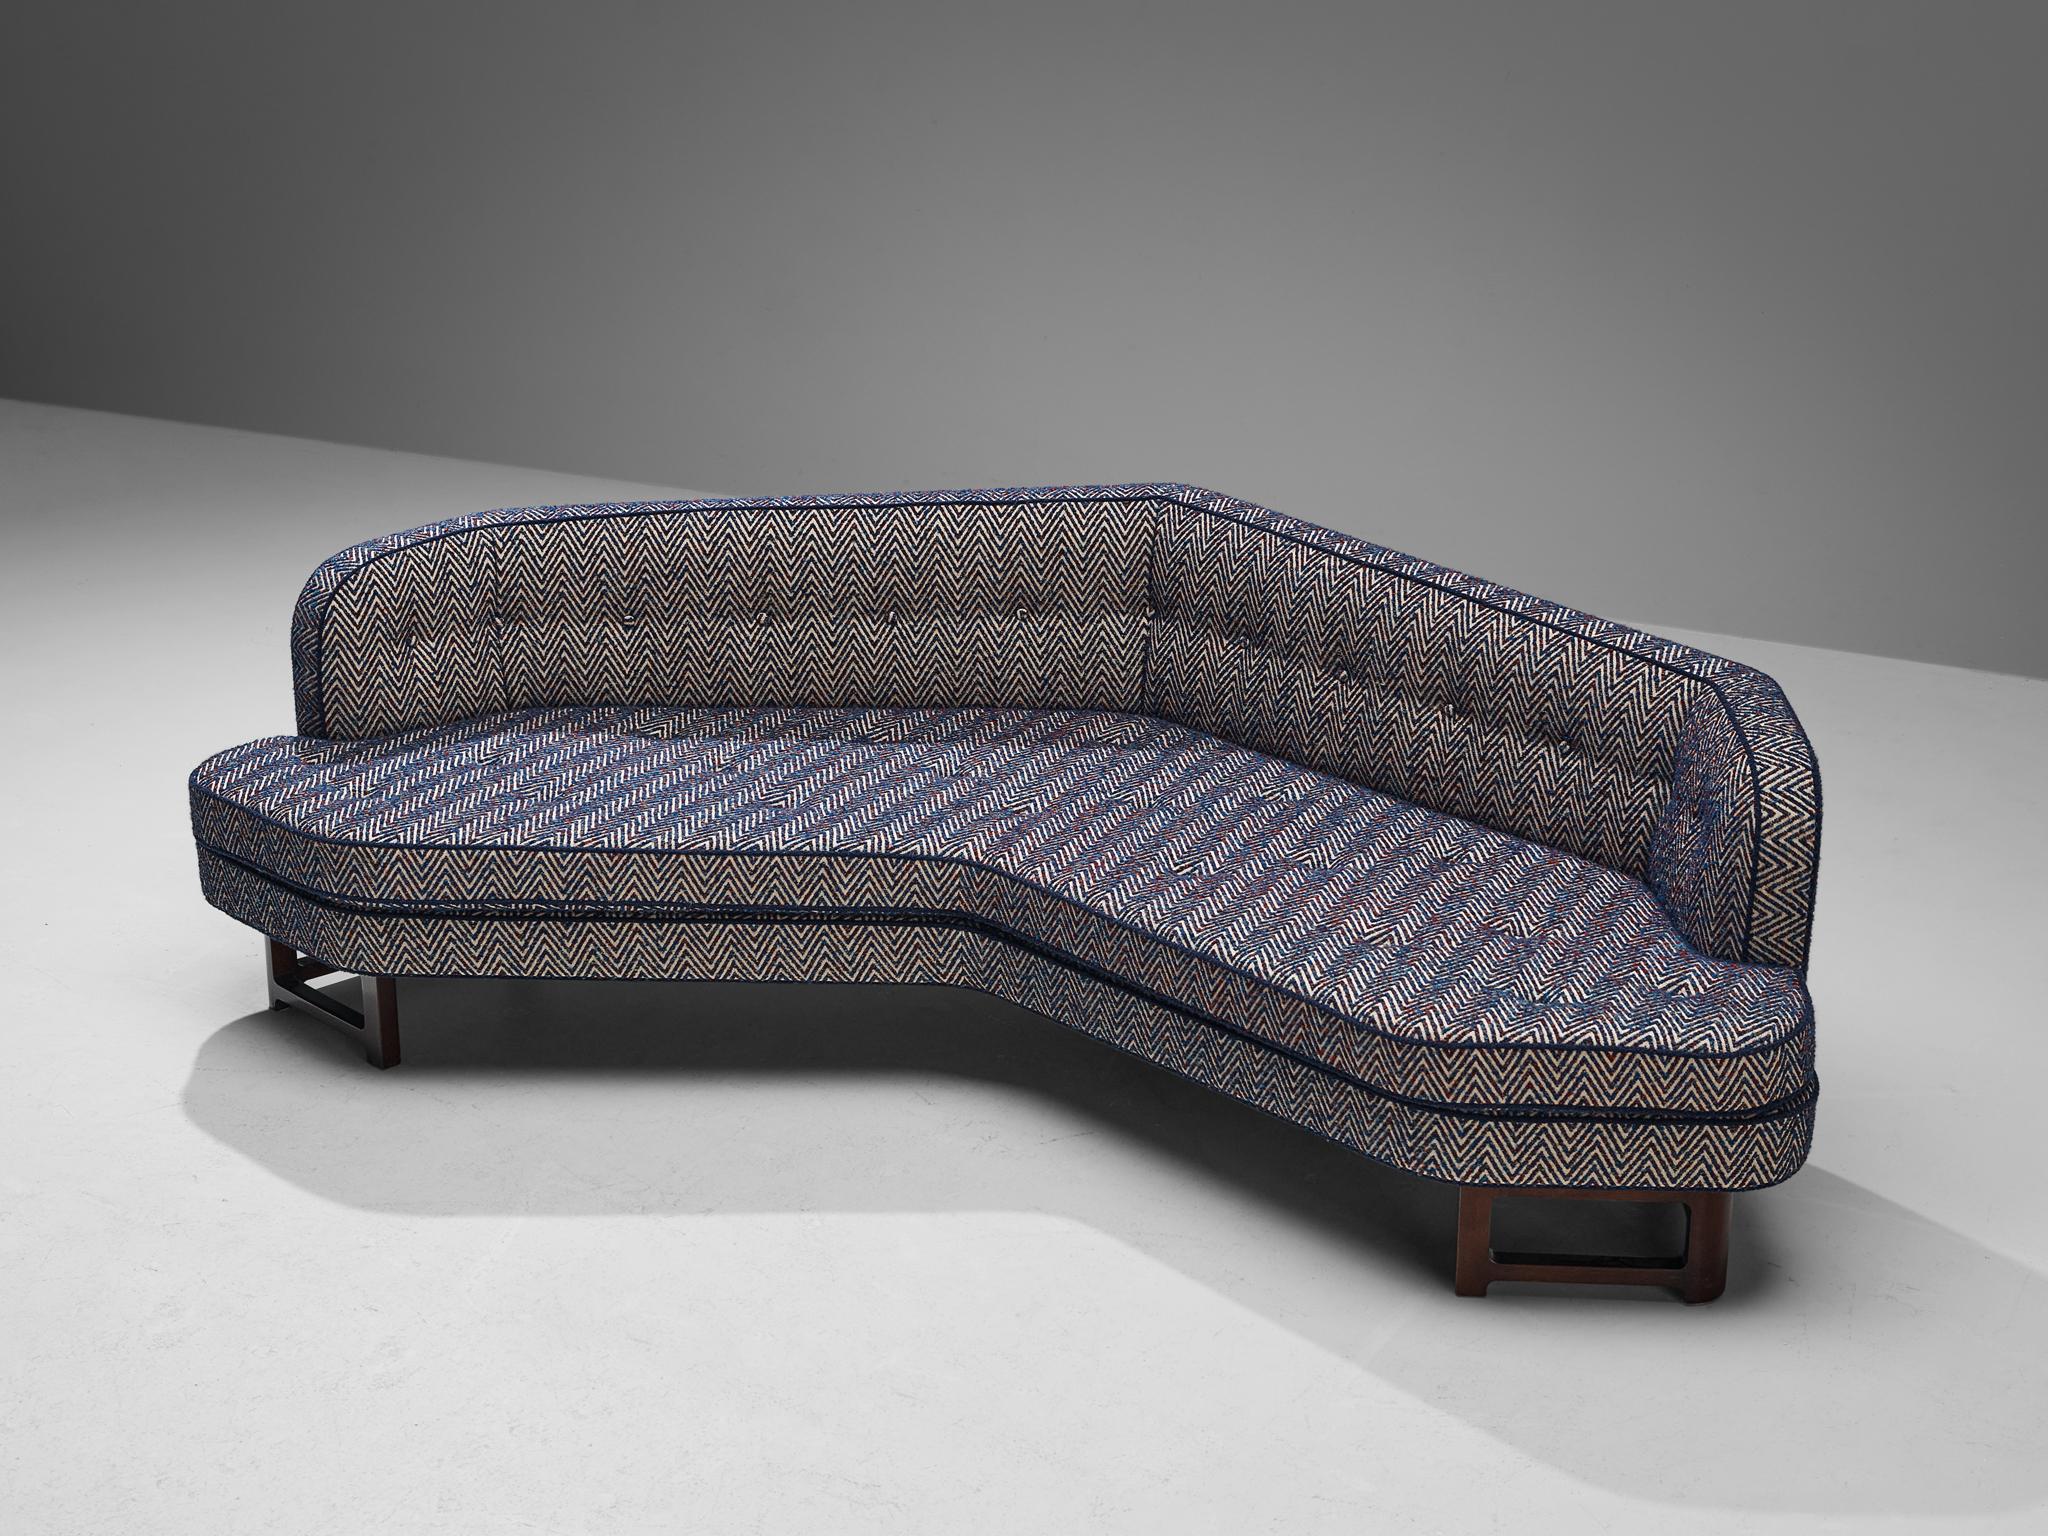 Edward Wormley für Dunbar, Janus-Sofa, Modell '6392', neu gepolstert mit Evolution21-Stoff Brazil Blue, Mahagoni, Vereinigte Staaten, 1960er Jahre.

Breitwinkliges Sofa 'Janus' von Edward Wormley. Dieses Sofa hat eine moderne Form und geschwungene